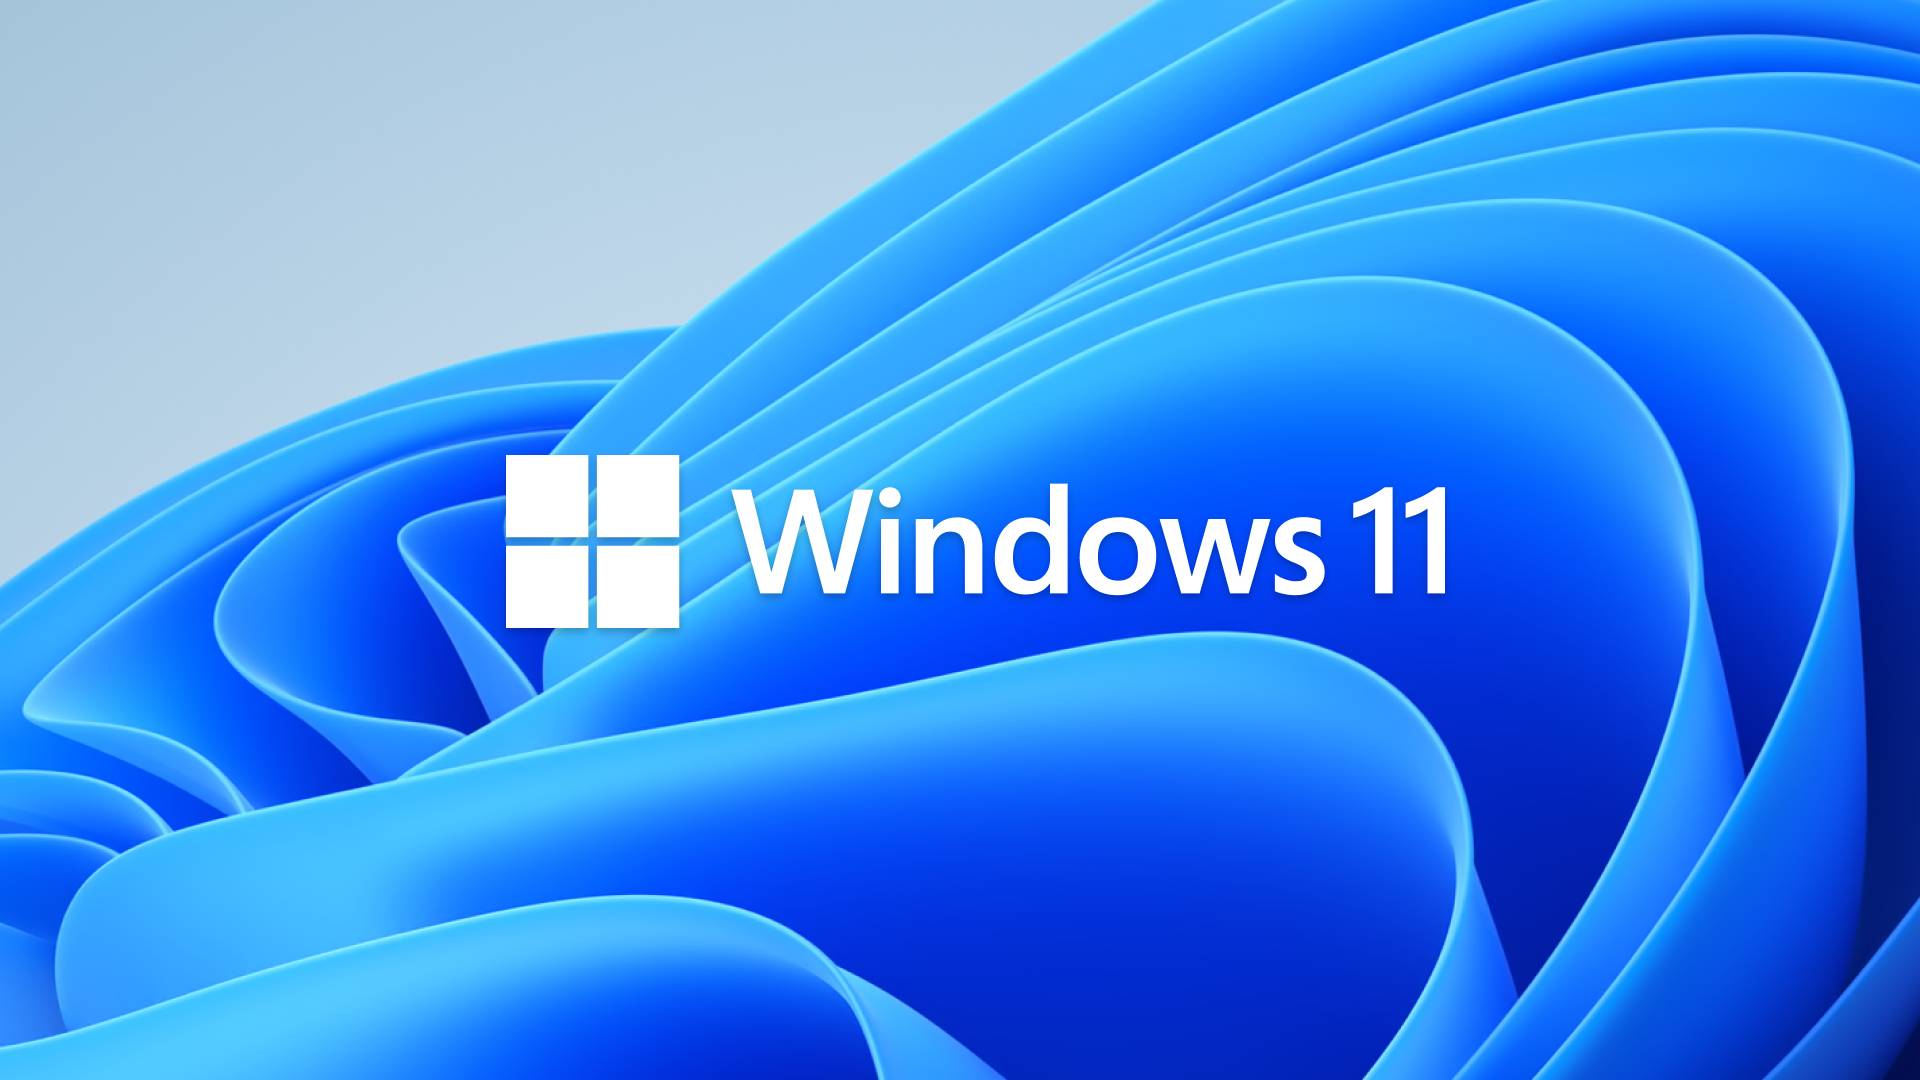 Windows 11 Nowe ZMIANY Microsoftu krytykowane